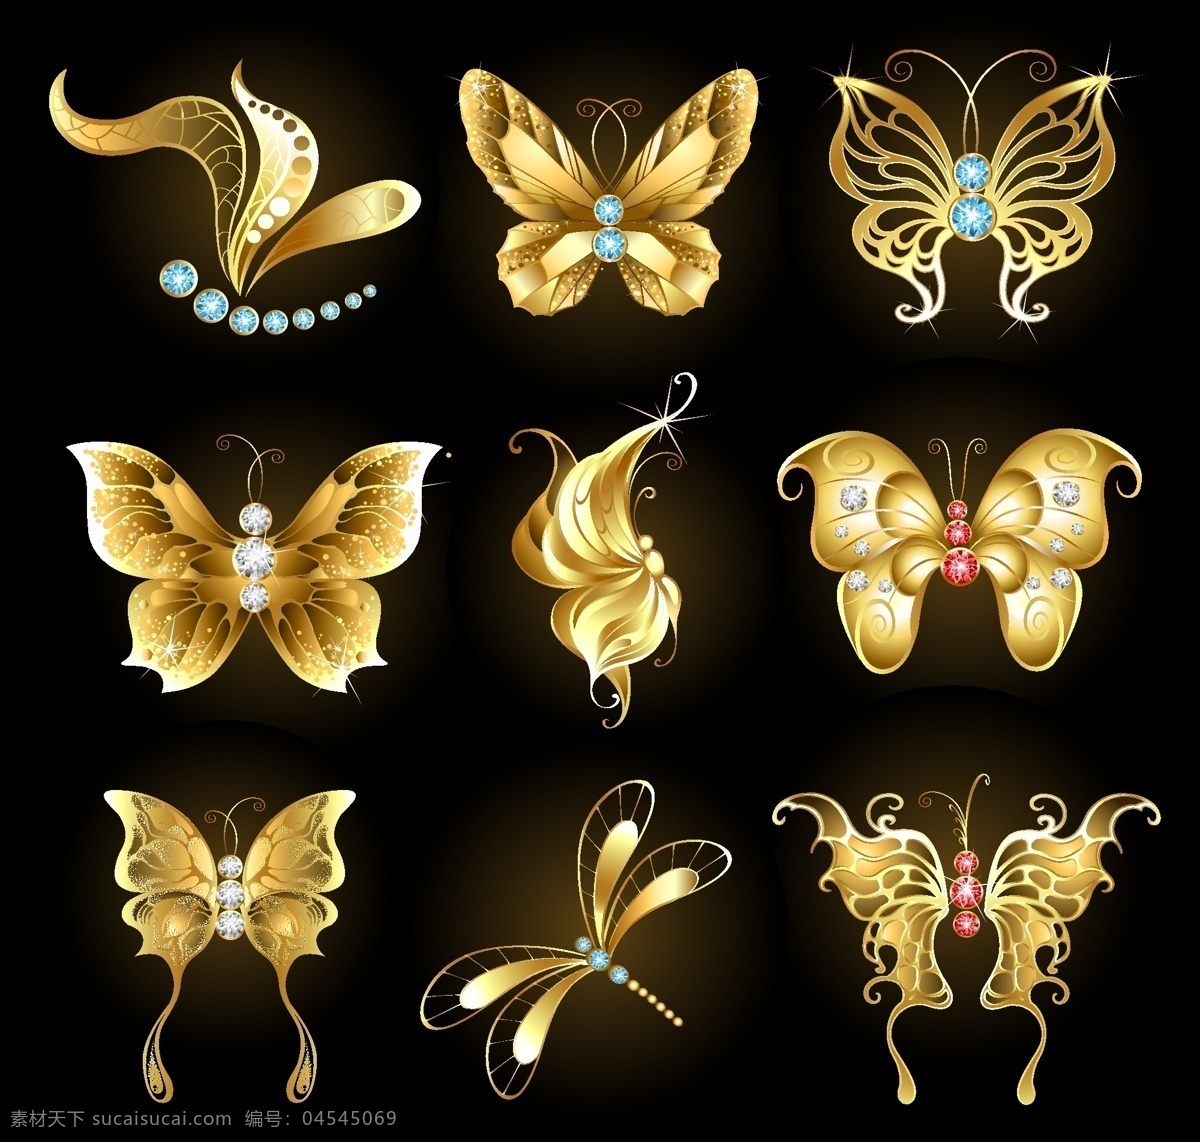 钻石 黄金 蝴蝶 矢量 eps格式 宝石 金色 蜻蜓 矢量图 其他矢量图